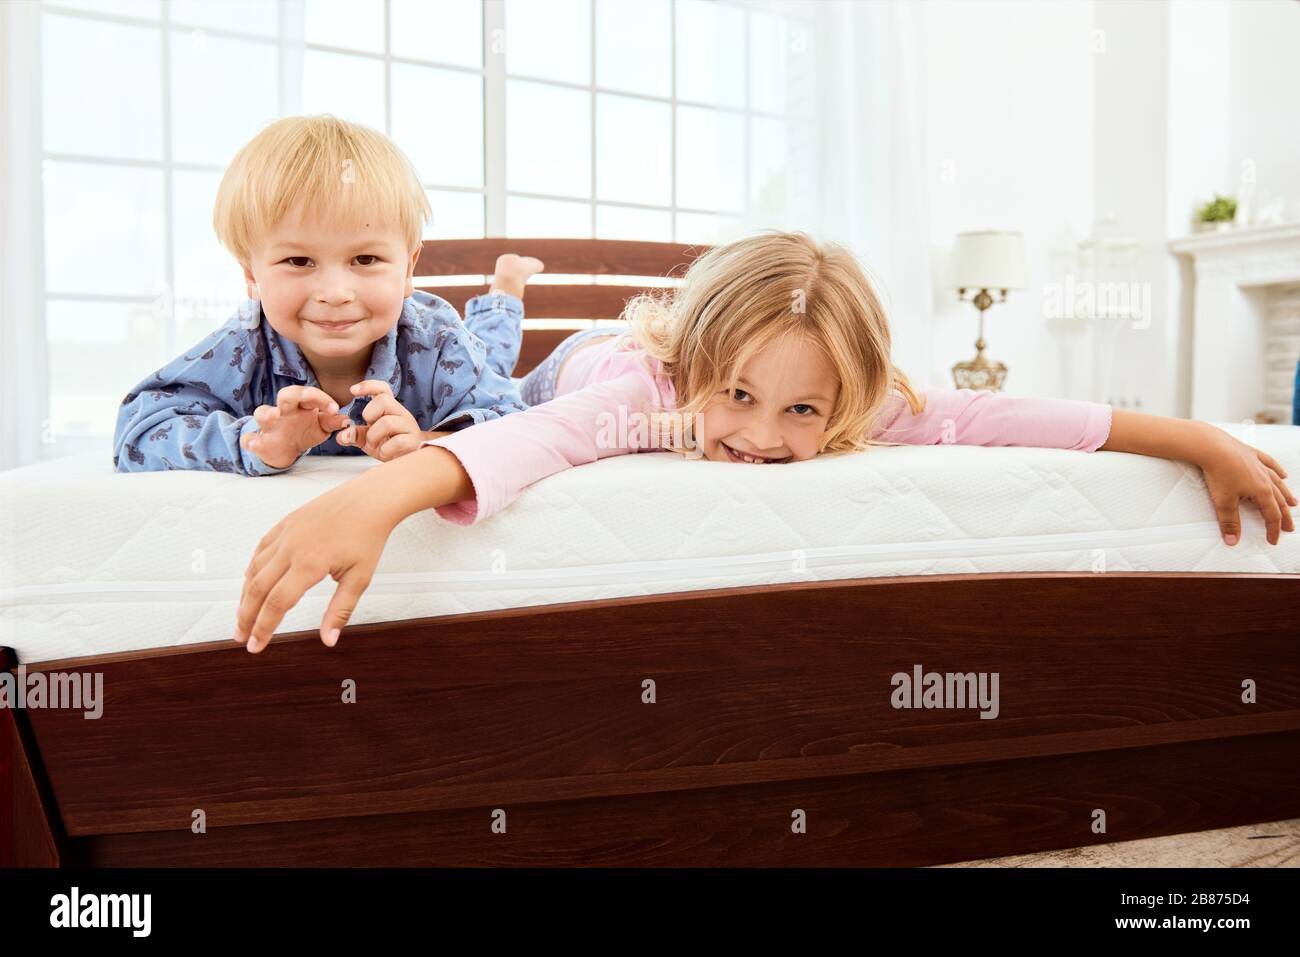 Fröhlicher, süßer kleiner Bruder und Schwester, die die Kamera angucken und lächeln, während sie auf einer großen, bequemen weißen Matratze im Schlafzimmer liegen. Gemeinsam spielen. Quarantäne. Schlafzimmer. Familie Stockfoto